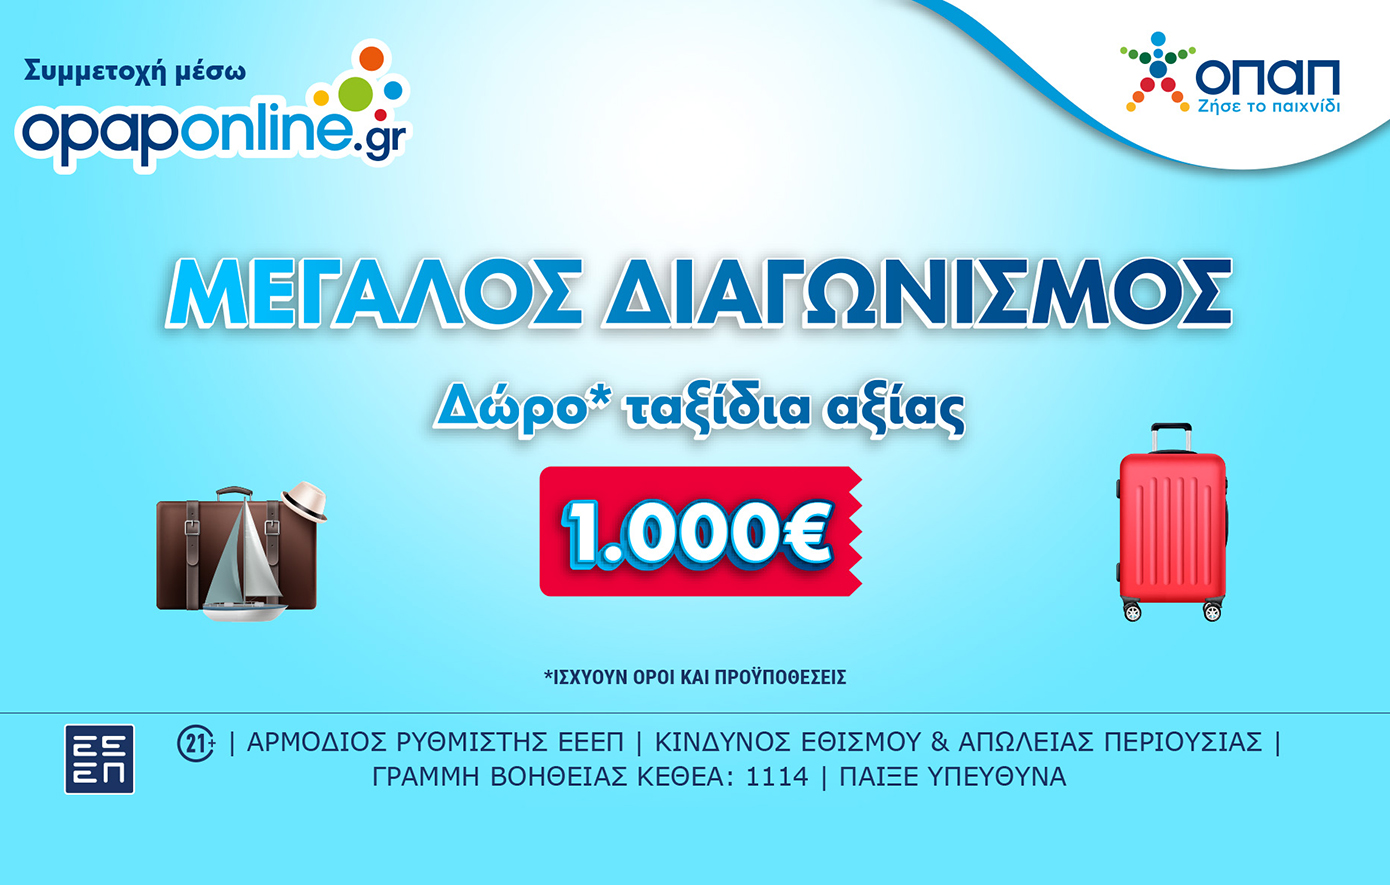 Δωρεάν ταξίδια* αξίας 1.000 ευρώ στο opaponline.gr